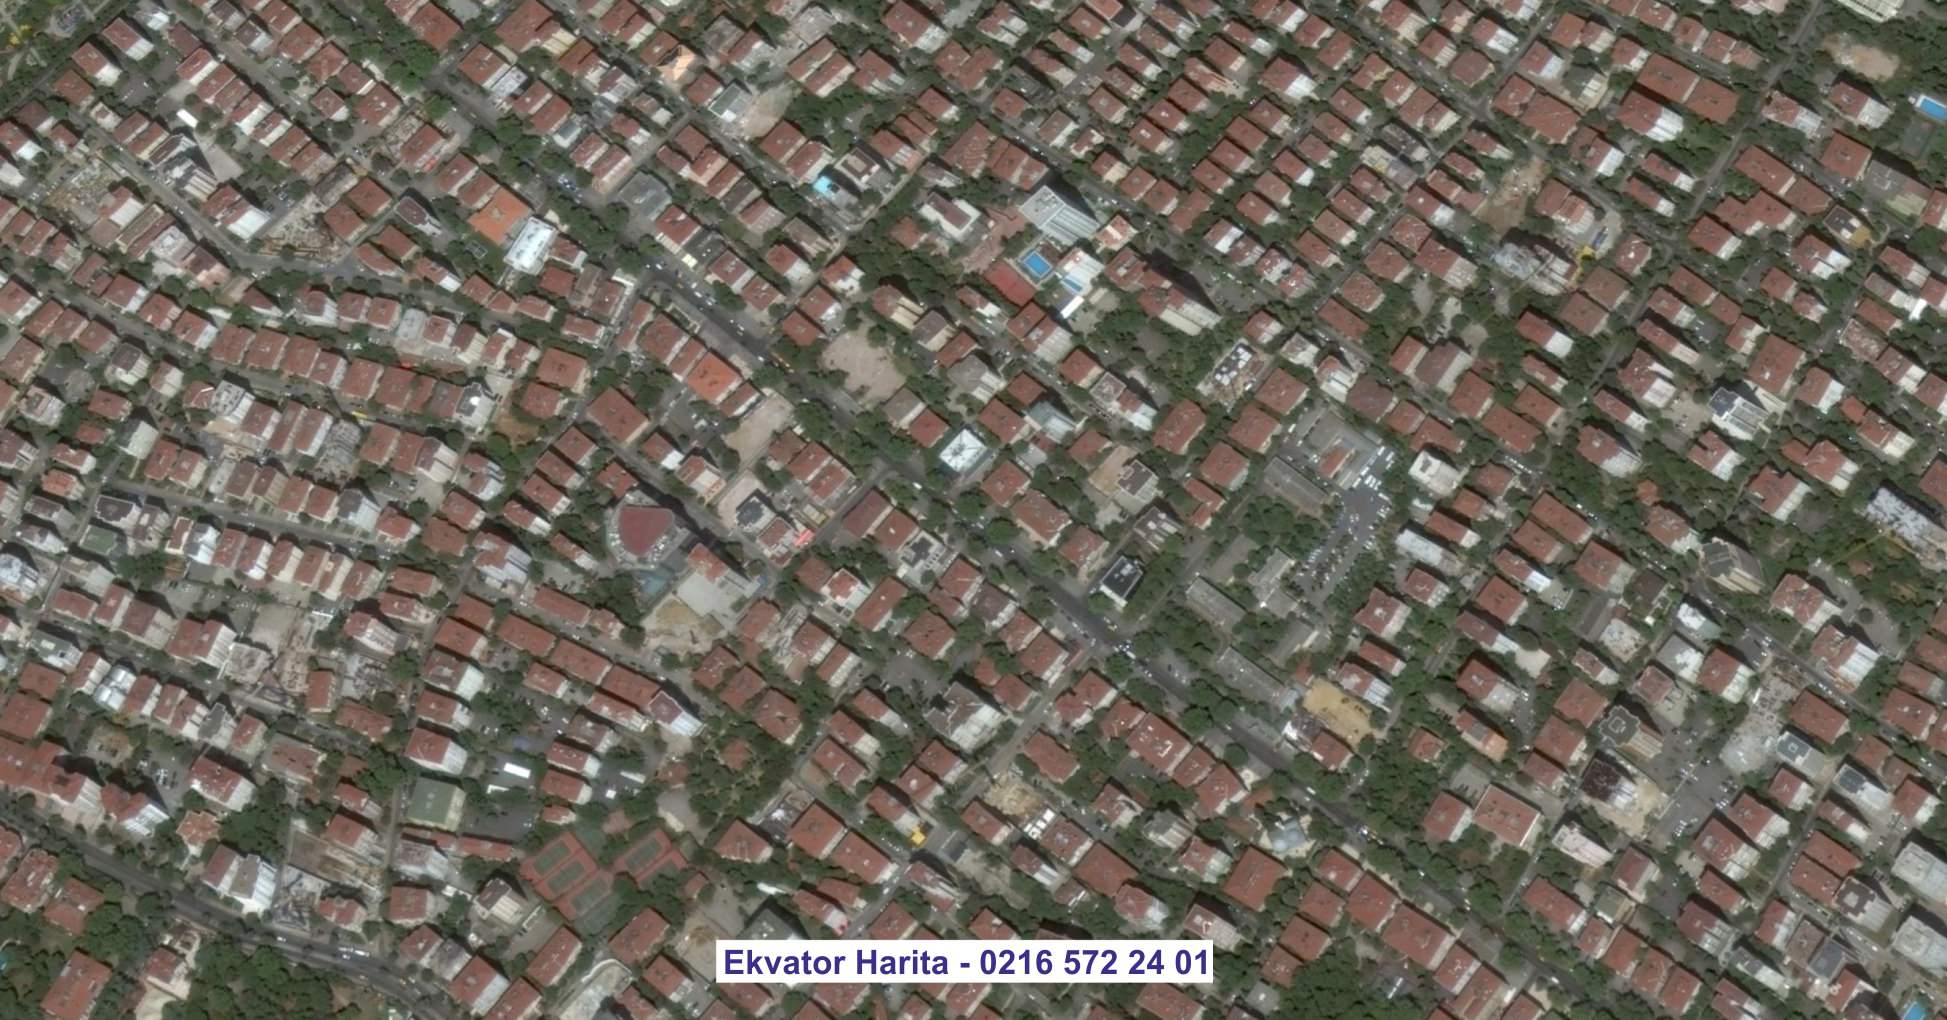 Siirt Uydu Görüntüsü Örnek Fotoğrafı